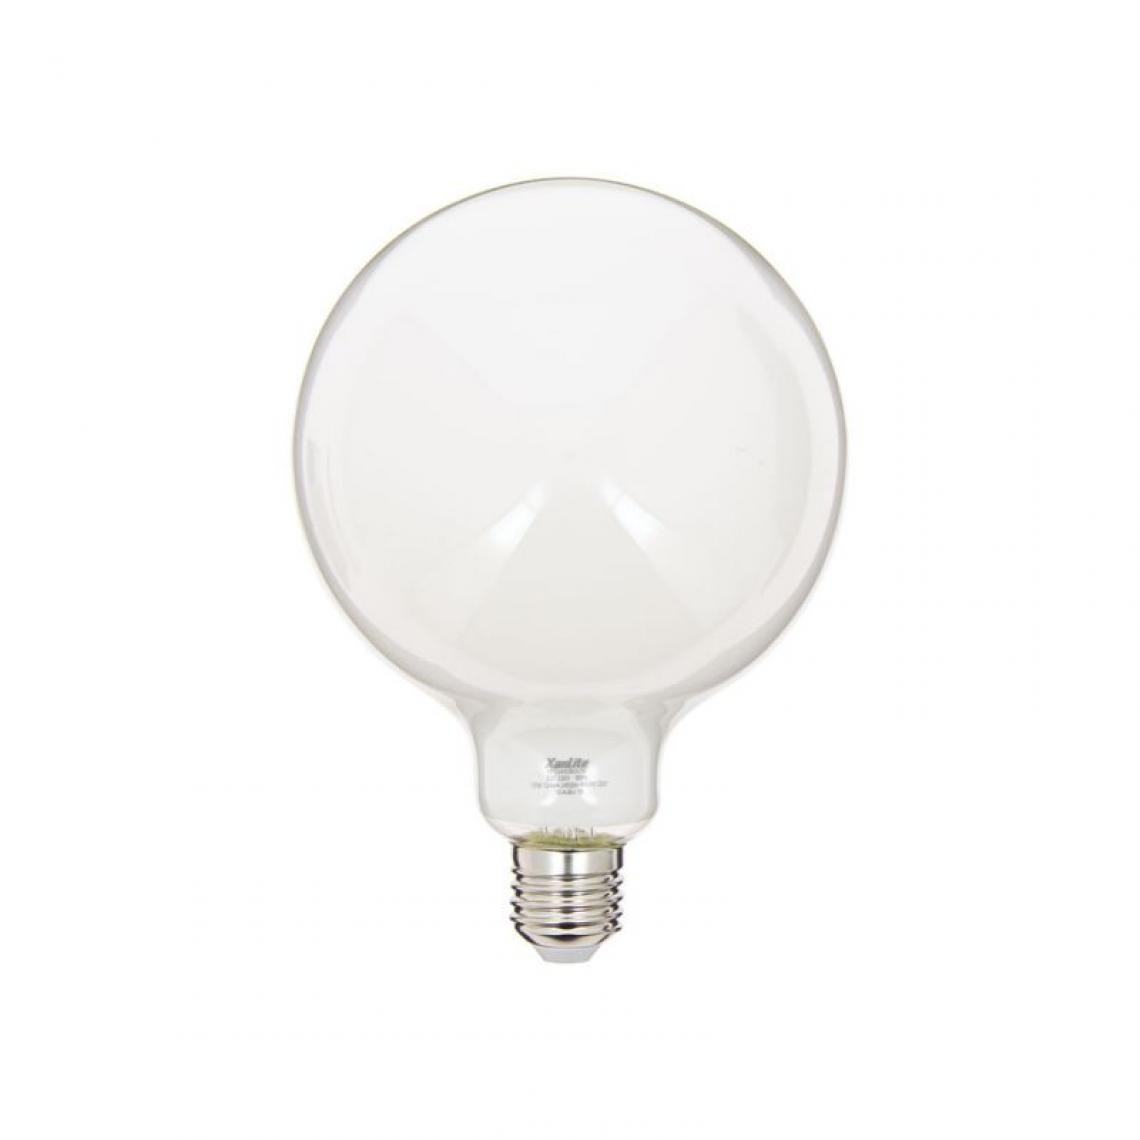 Xanlite - Ampoule LED G125 Opaque, culot E27, conso. 17W, 2452 Lumens, Blanc neutre - Ampoules LED